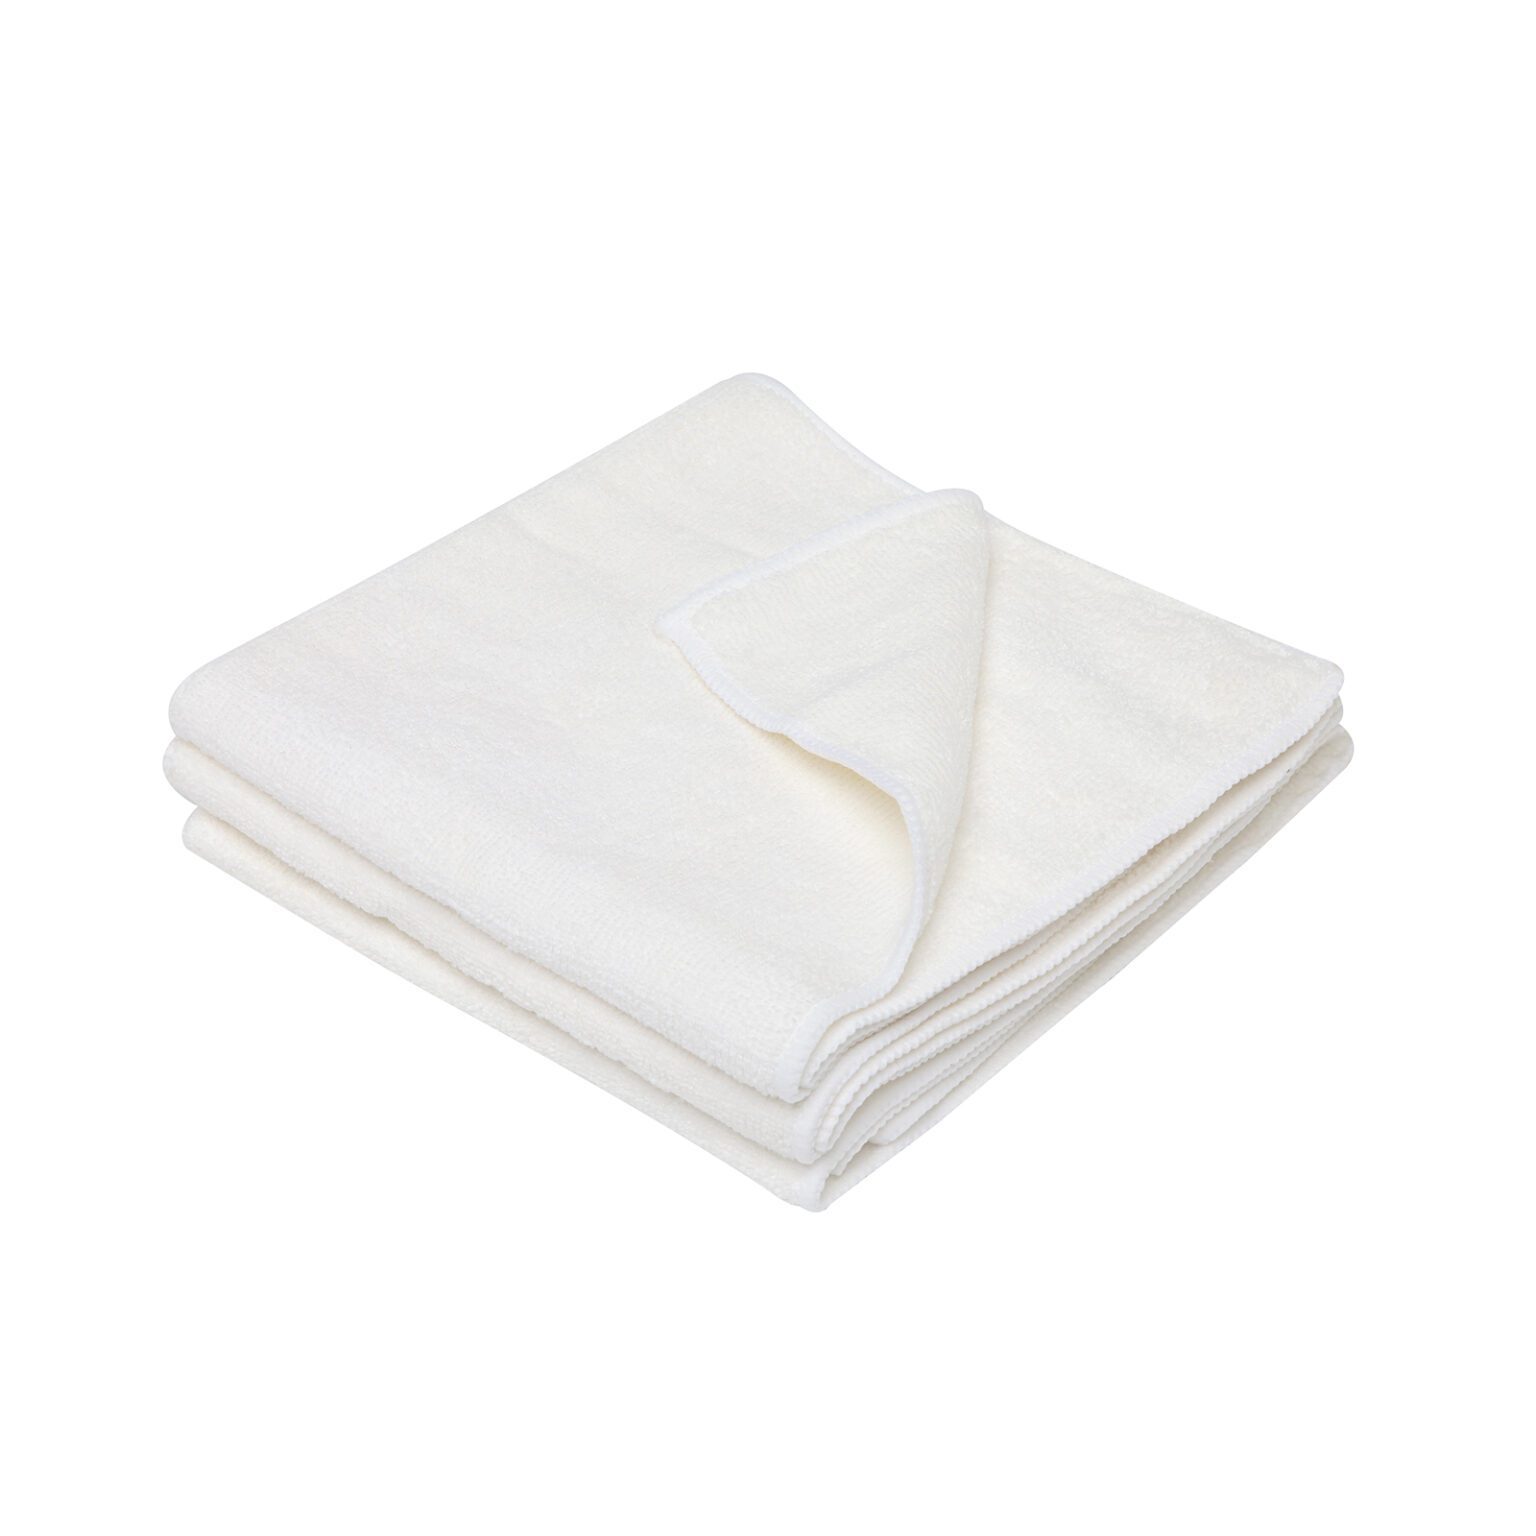 58014-merrifibre-cloth-white